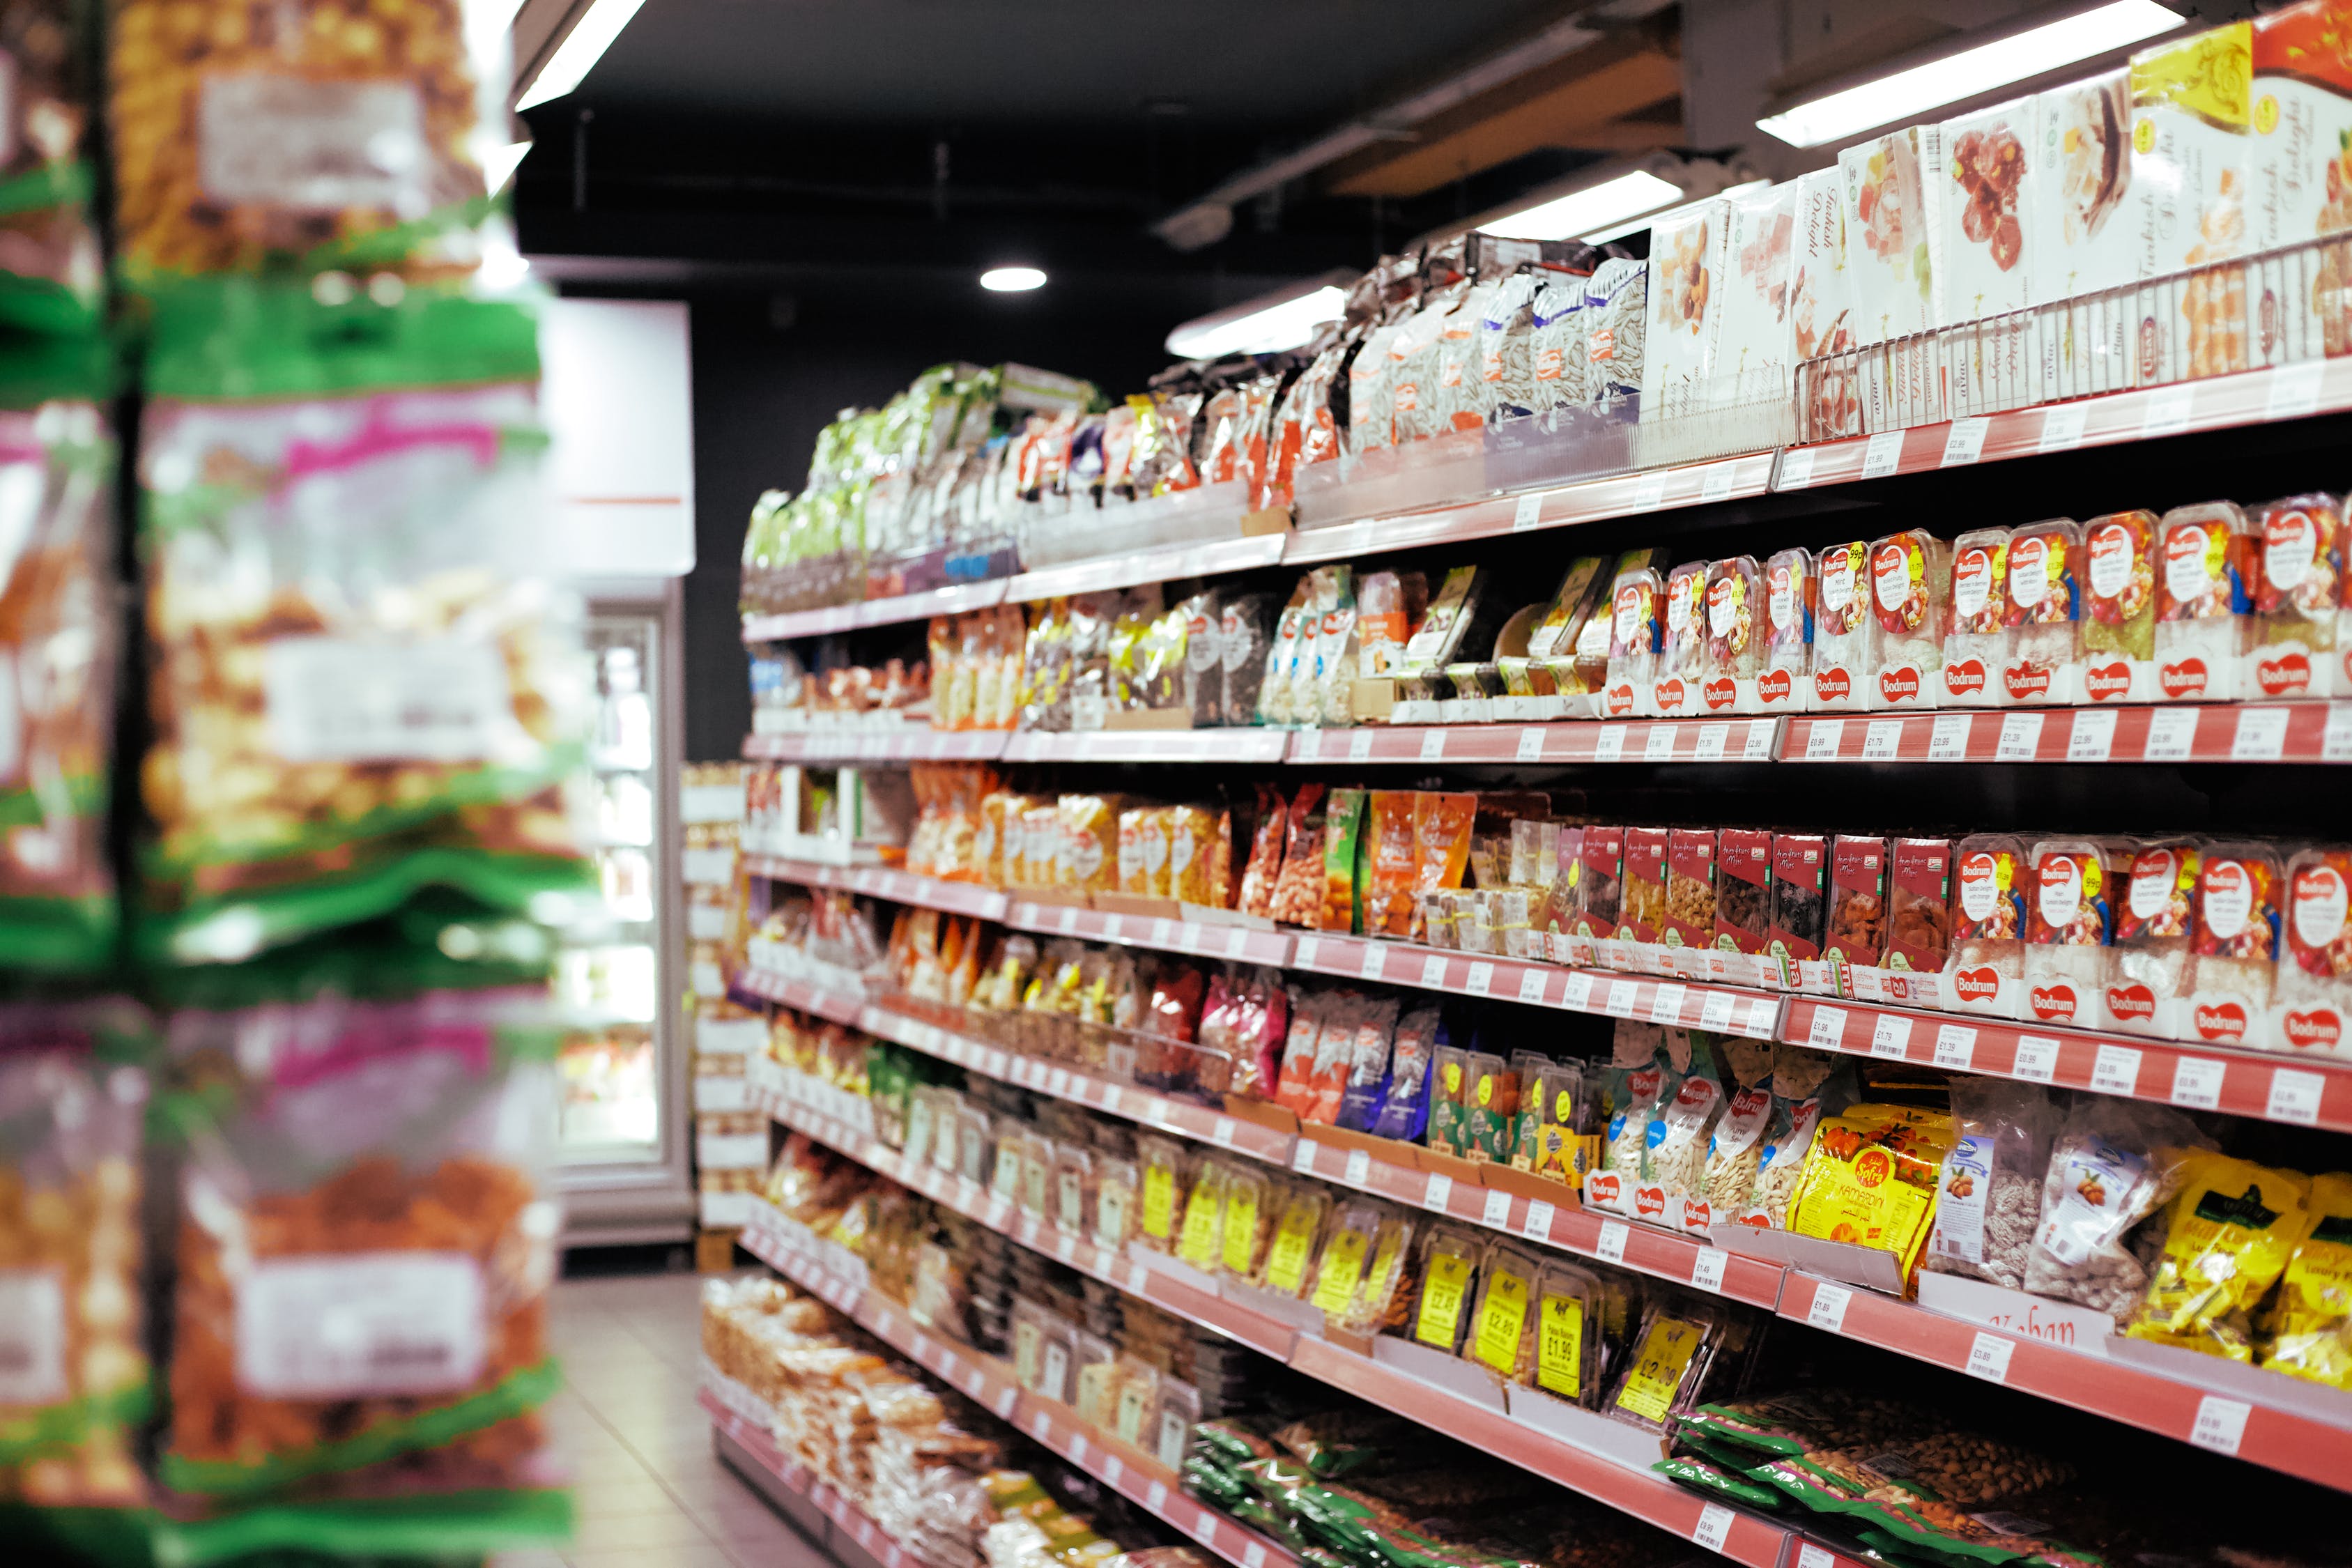 Coronavirus: Hungarian Retailers Say No Need To Panic Buy Food